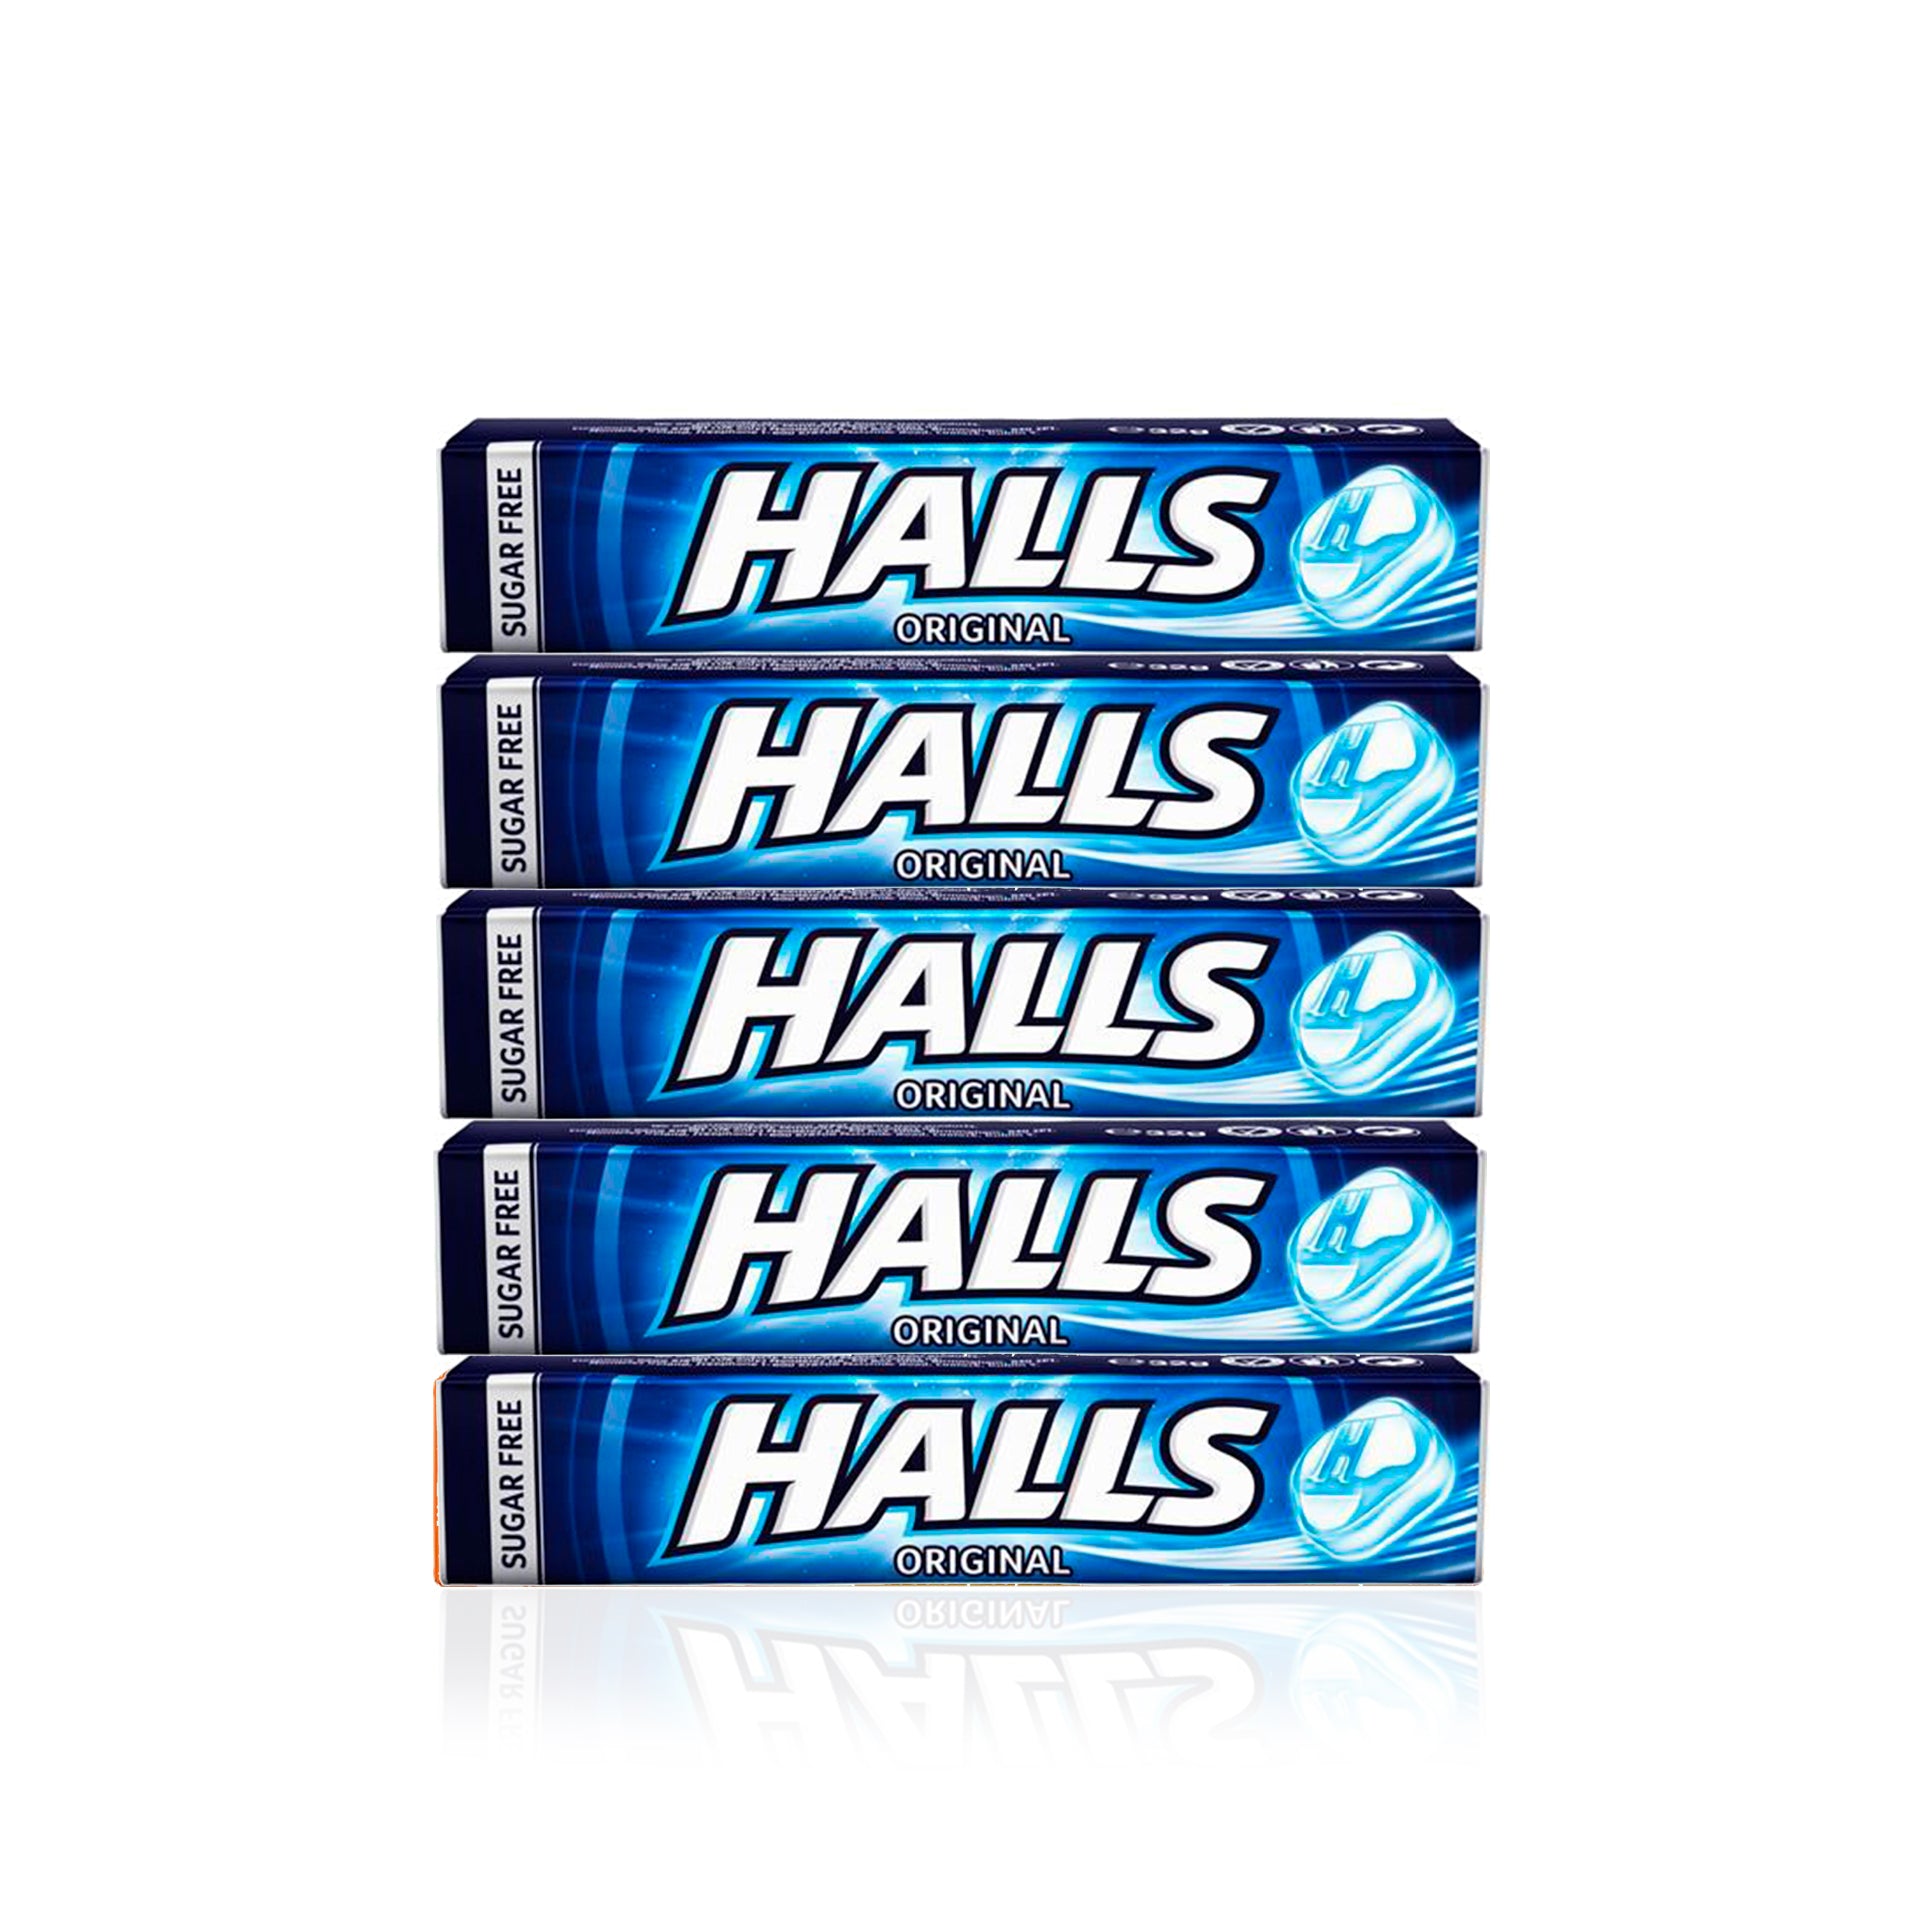 Halls Original Sem Açúcar 32 gr - Pack 5 x 32 gr